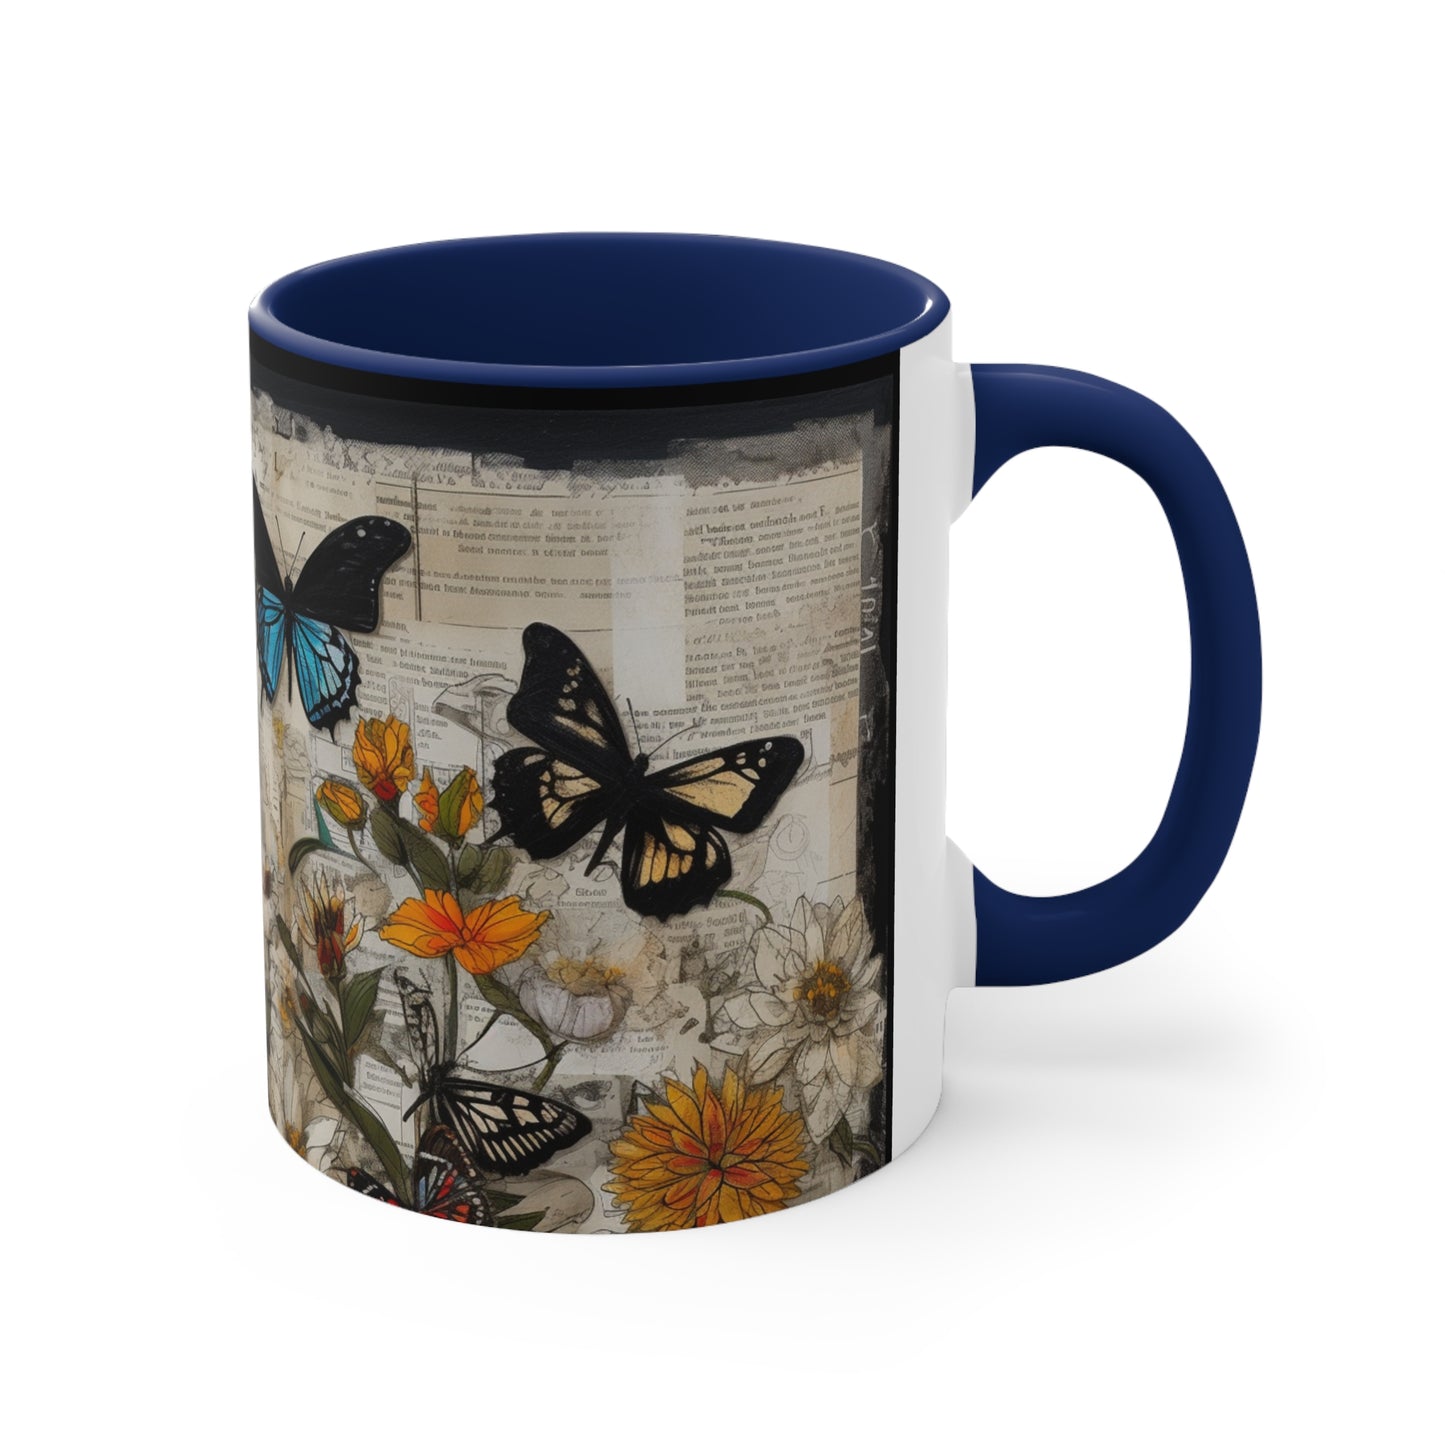 Accent Coffee Mug, 11oz - Butterflies over a Garden of Flowers